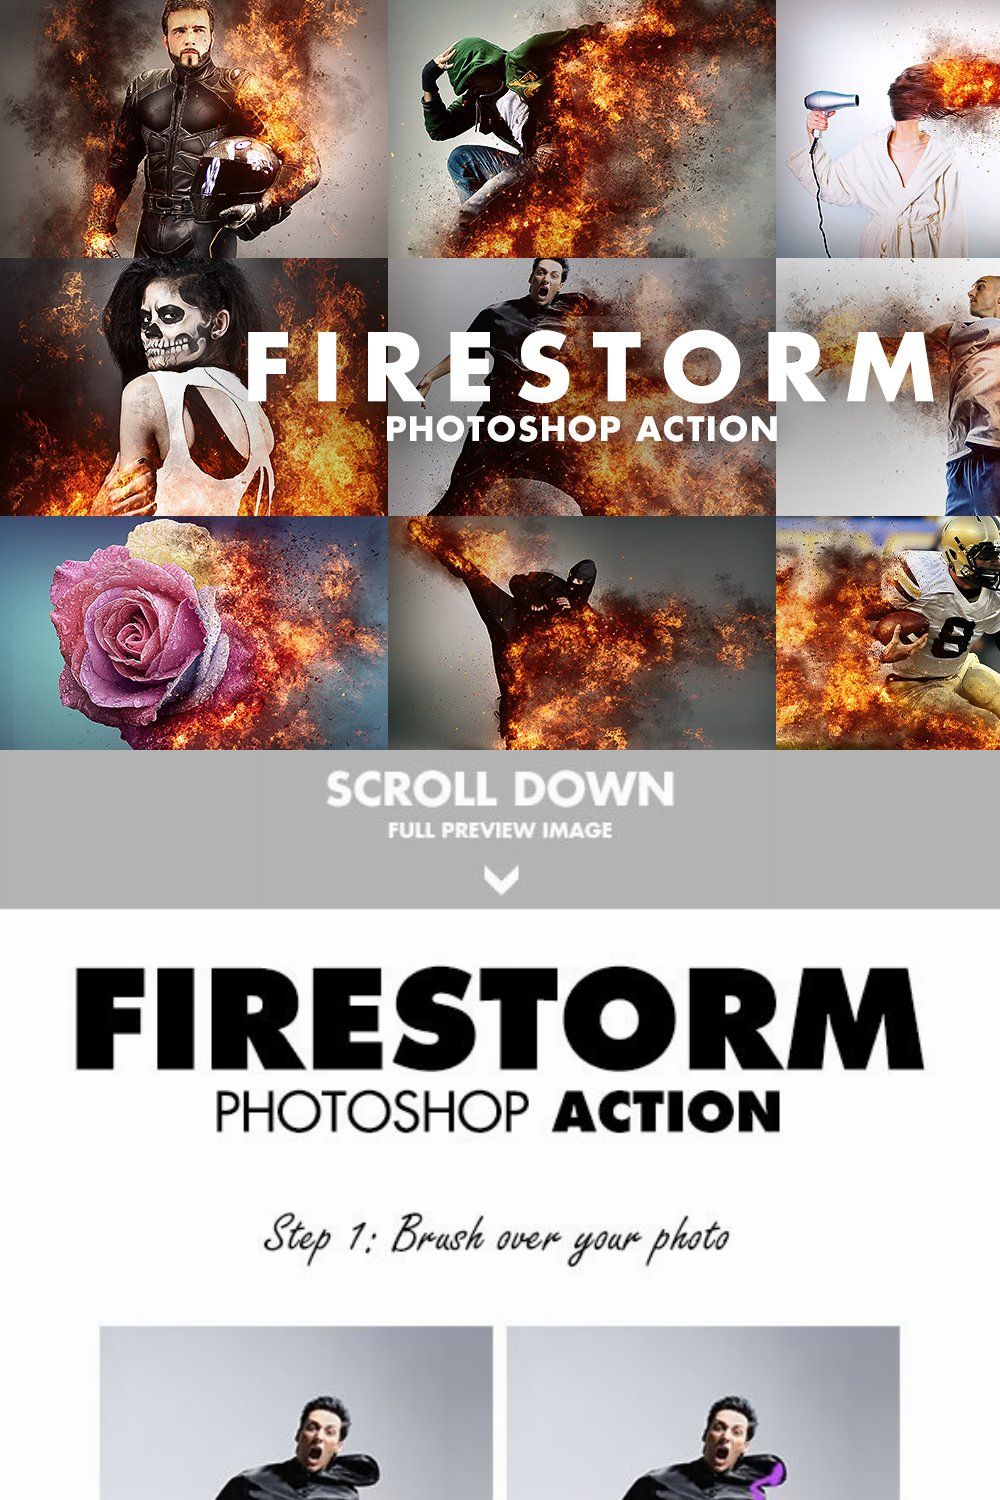 Firestorm Photoshop Action pinterest preview image.